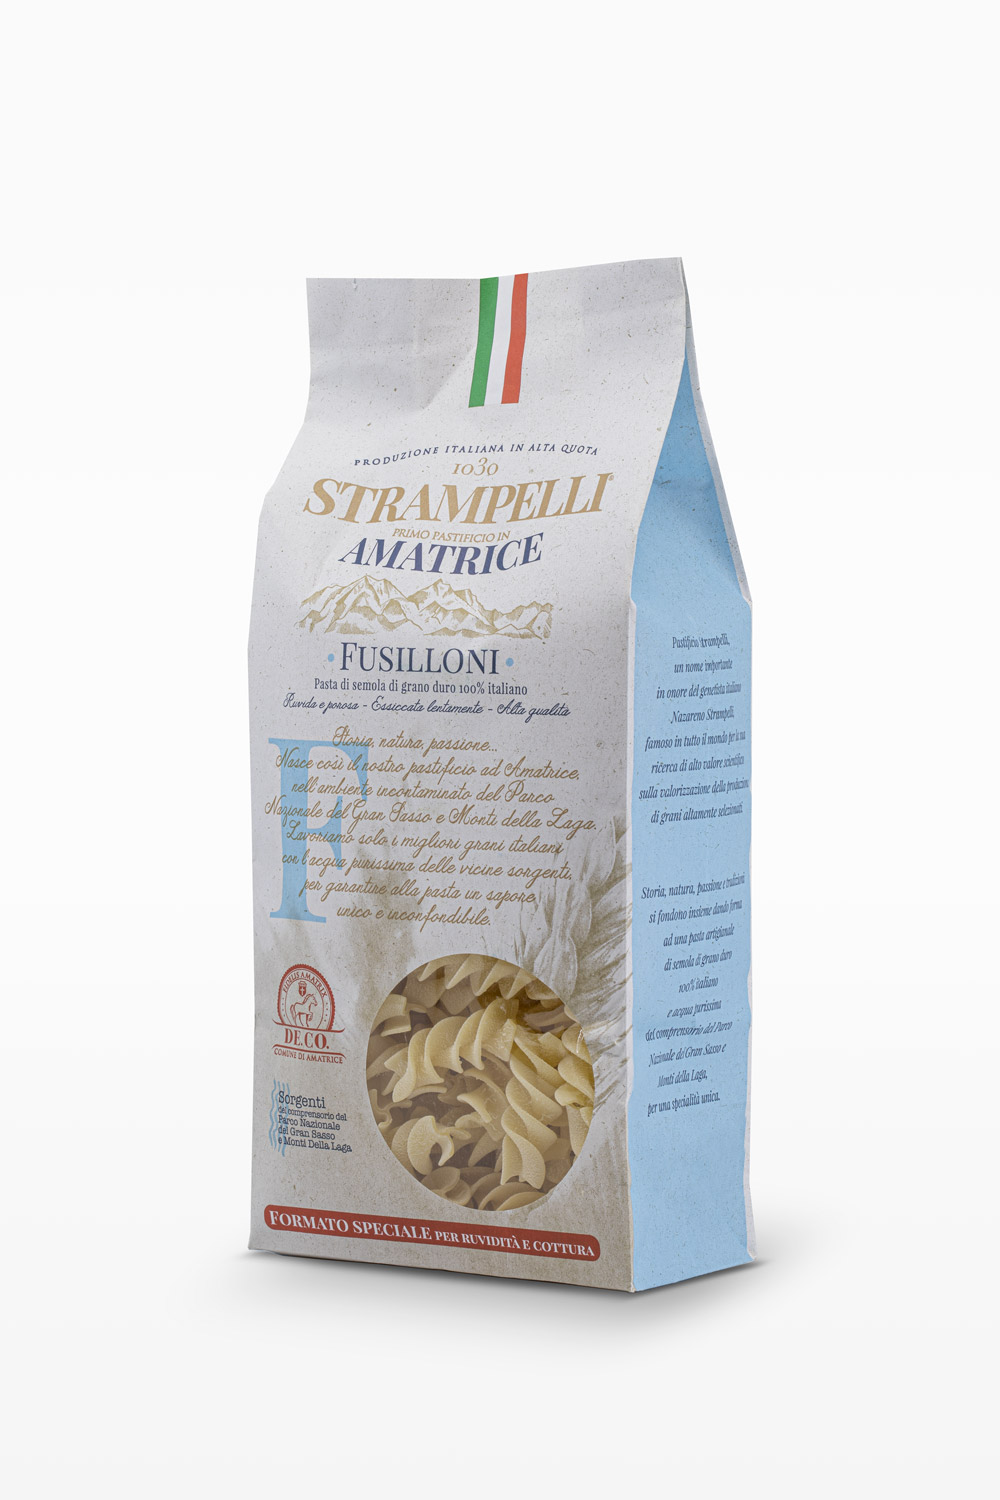 Fusilloni - Pasta di semola di grano duro, ruvida e porosa, grano 100% italiano, essiccazione lenta a bassa temperatura.